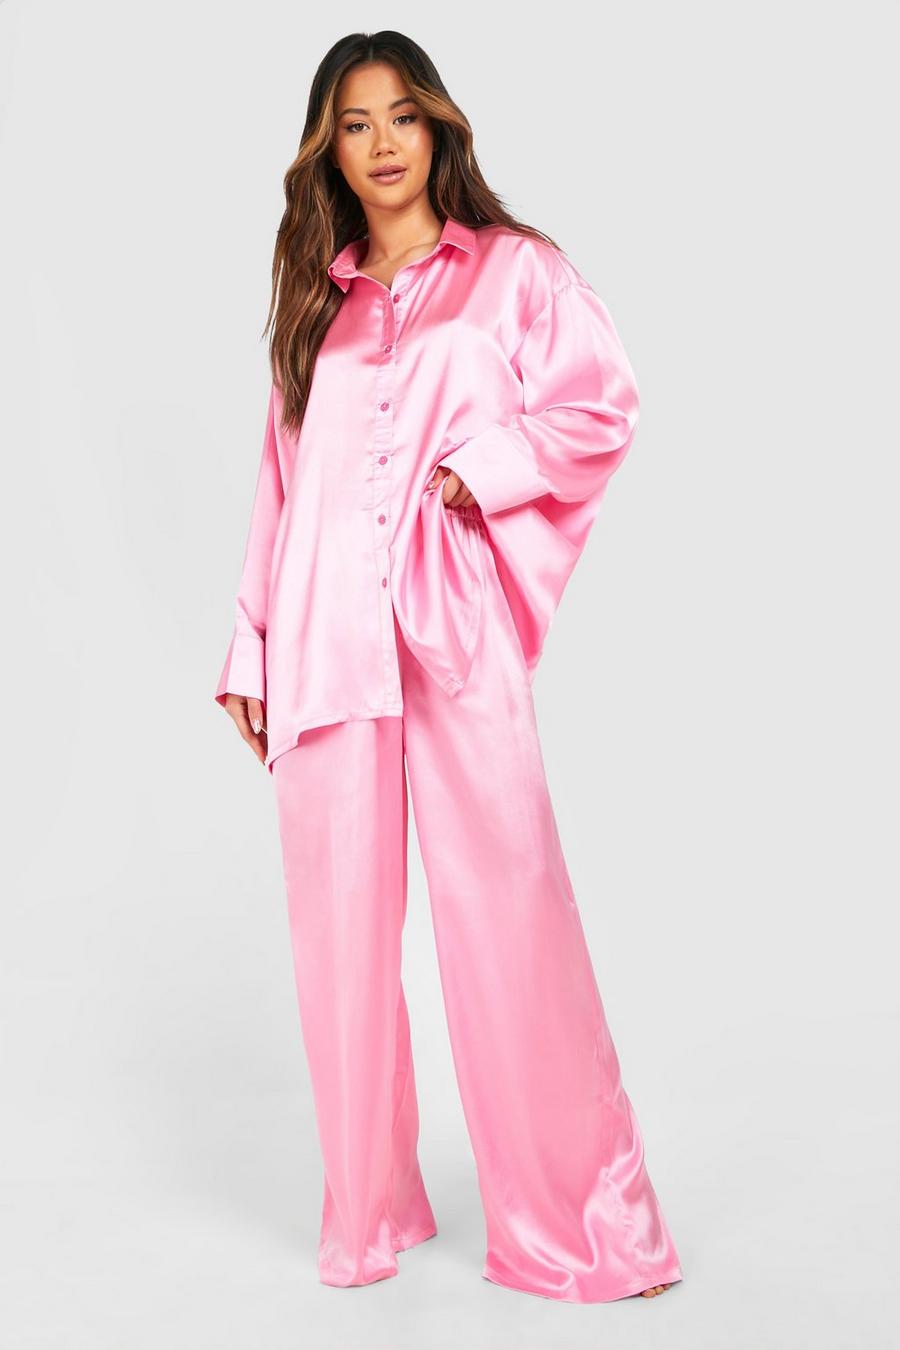 Silky Pajama Sets, Satin Pajamas